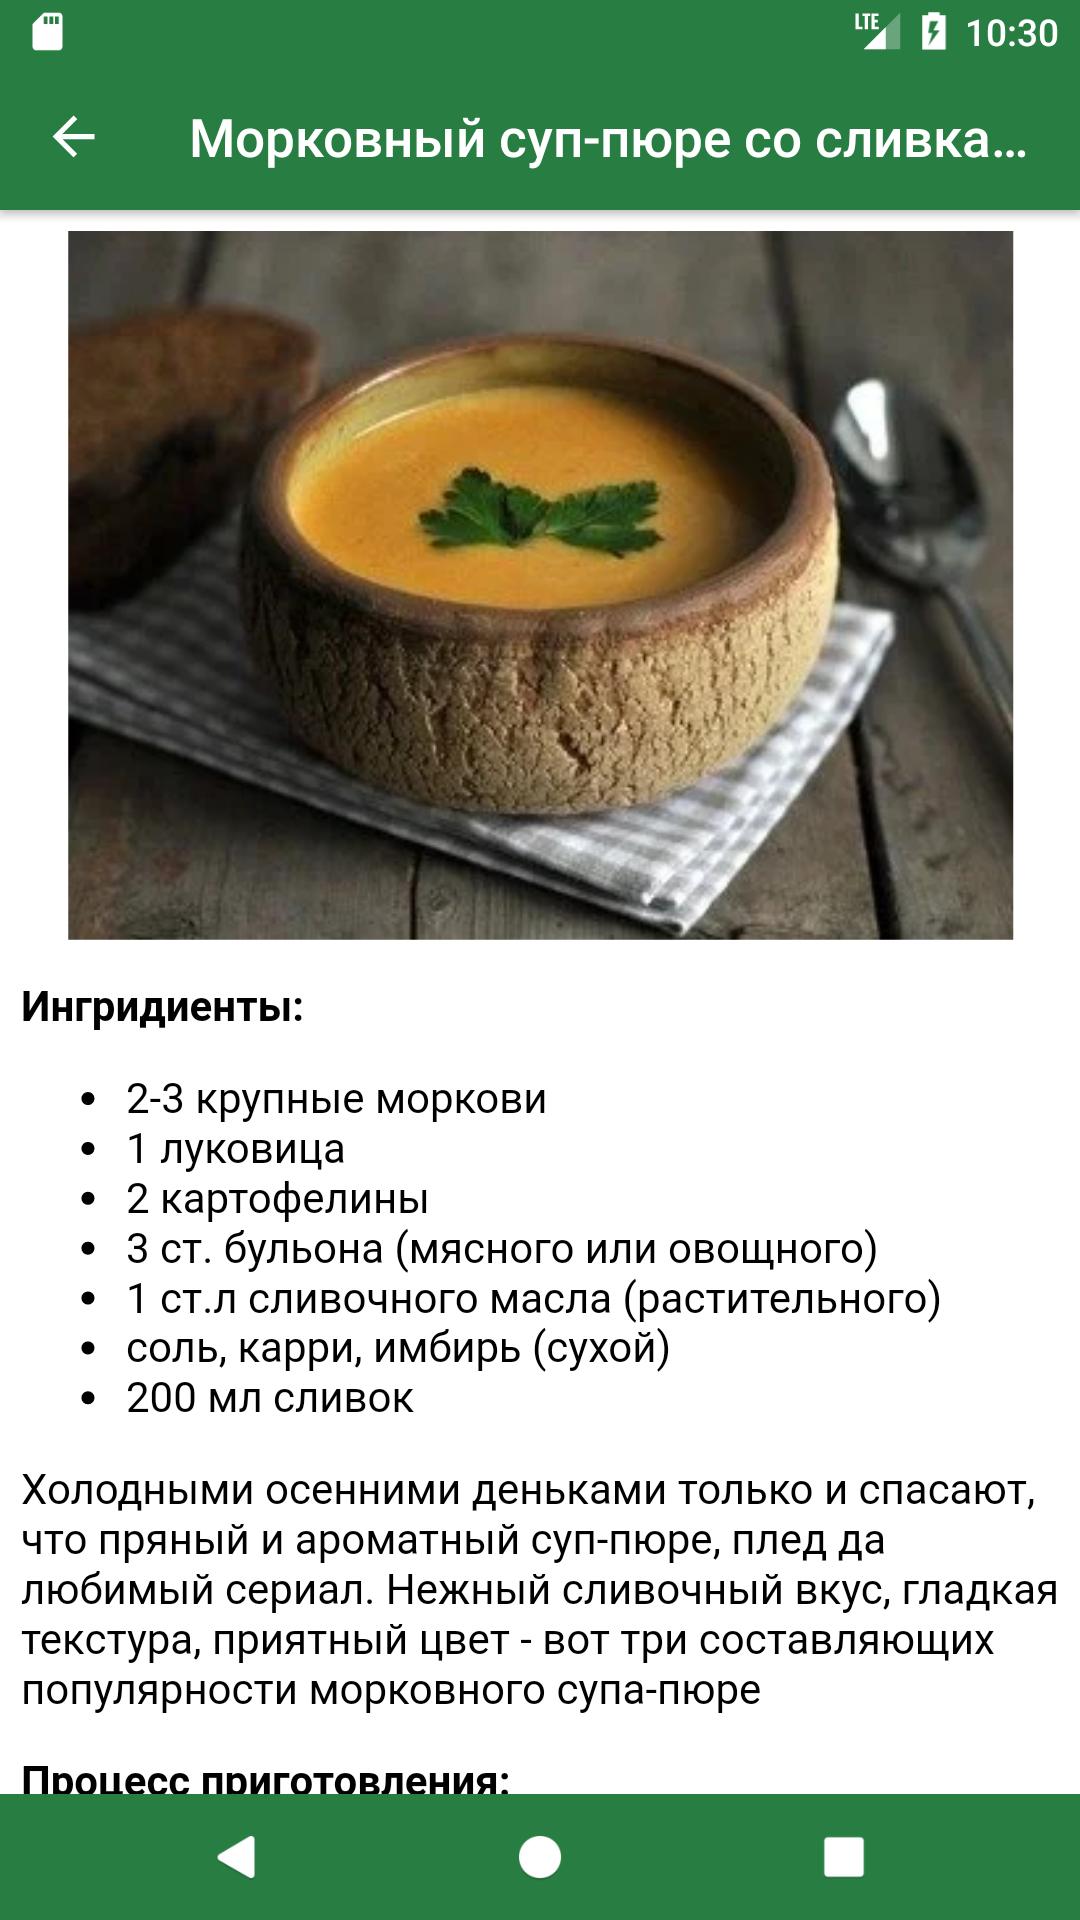 Пюре при гастрите рецепты. Технологическая карта крем суп из тыквы. Суп пюре вегетарианский. Технологические карты суп тыква. Технологическая карта приготовления супа пюре из тыквы.